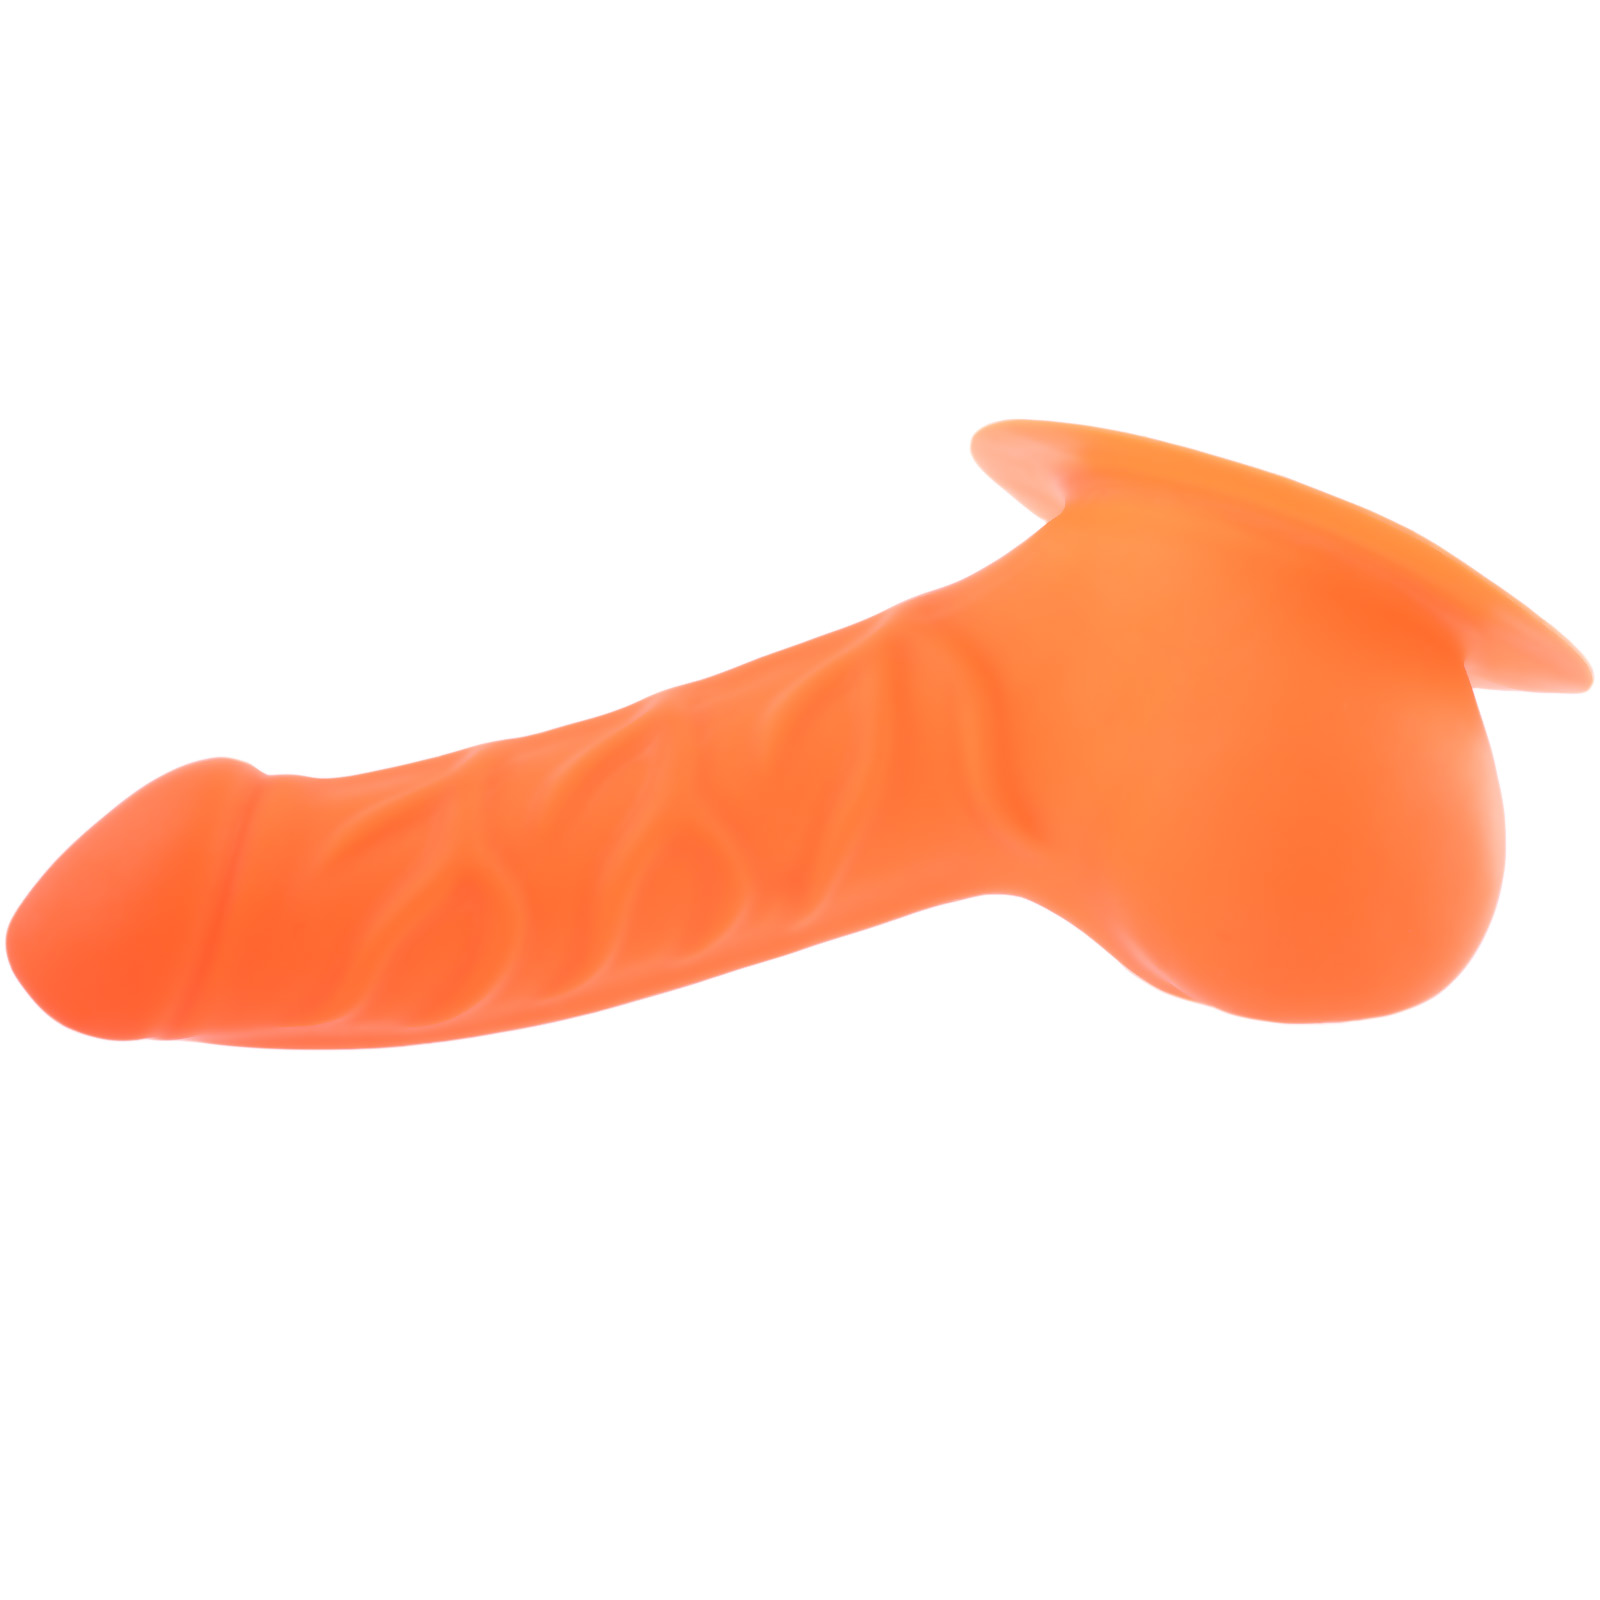 Toylie Latex-Penishülle «FRANZ» neon-orange, mit Basis-Platte zum Ankleben an Latexkleidung